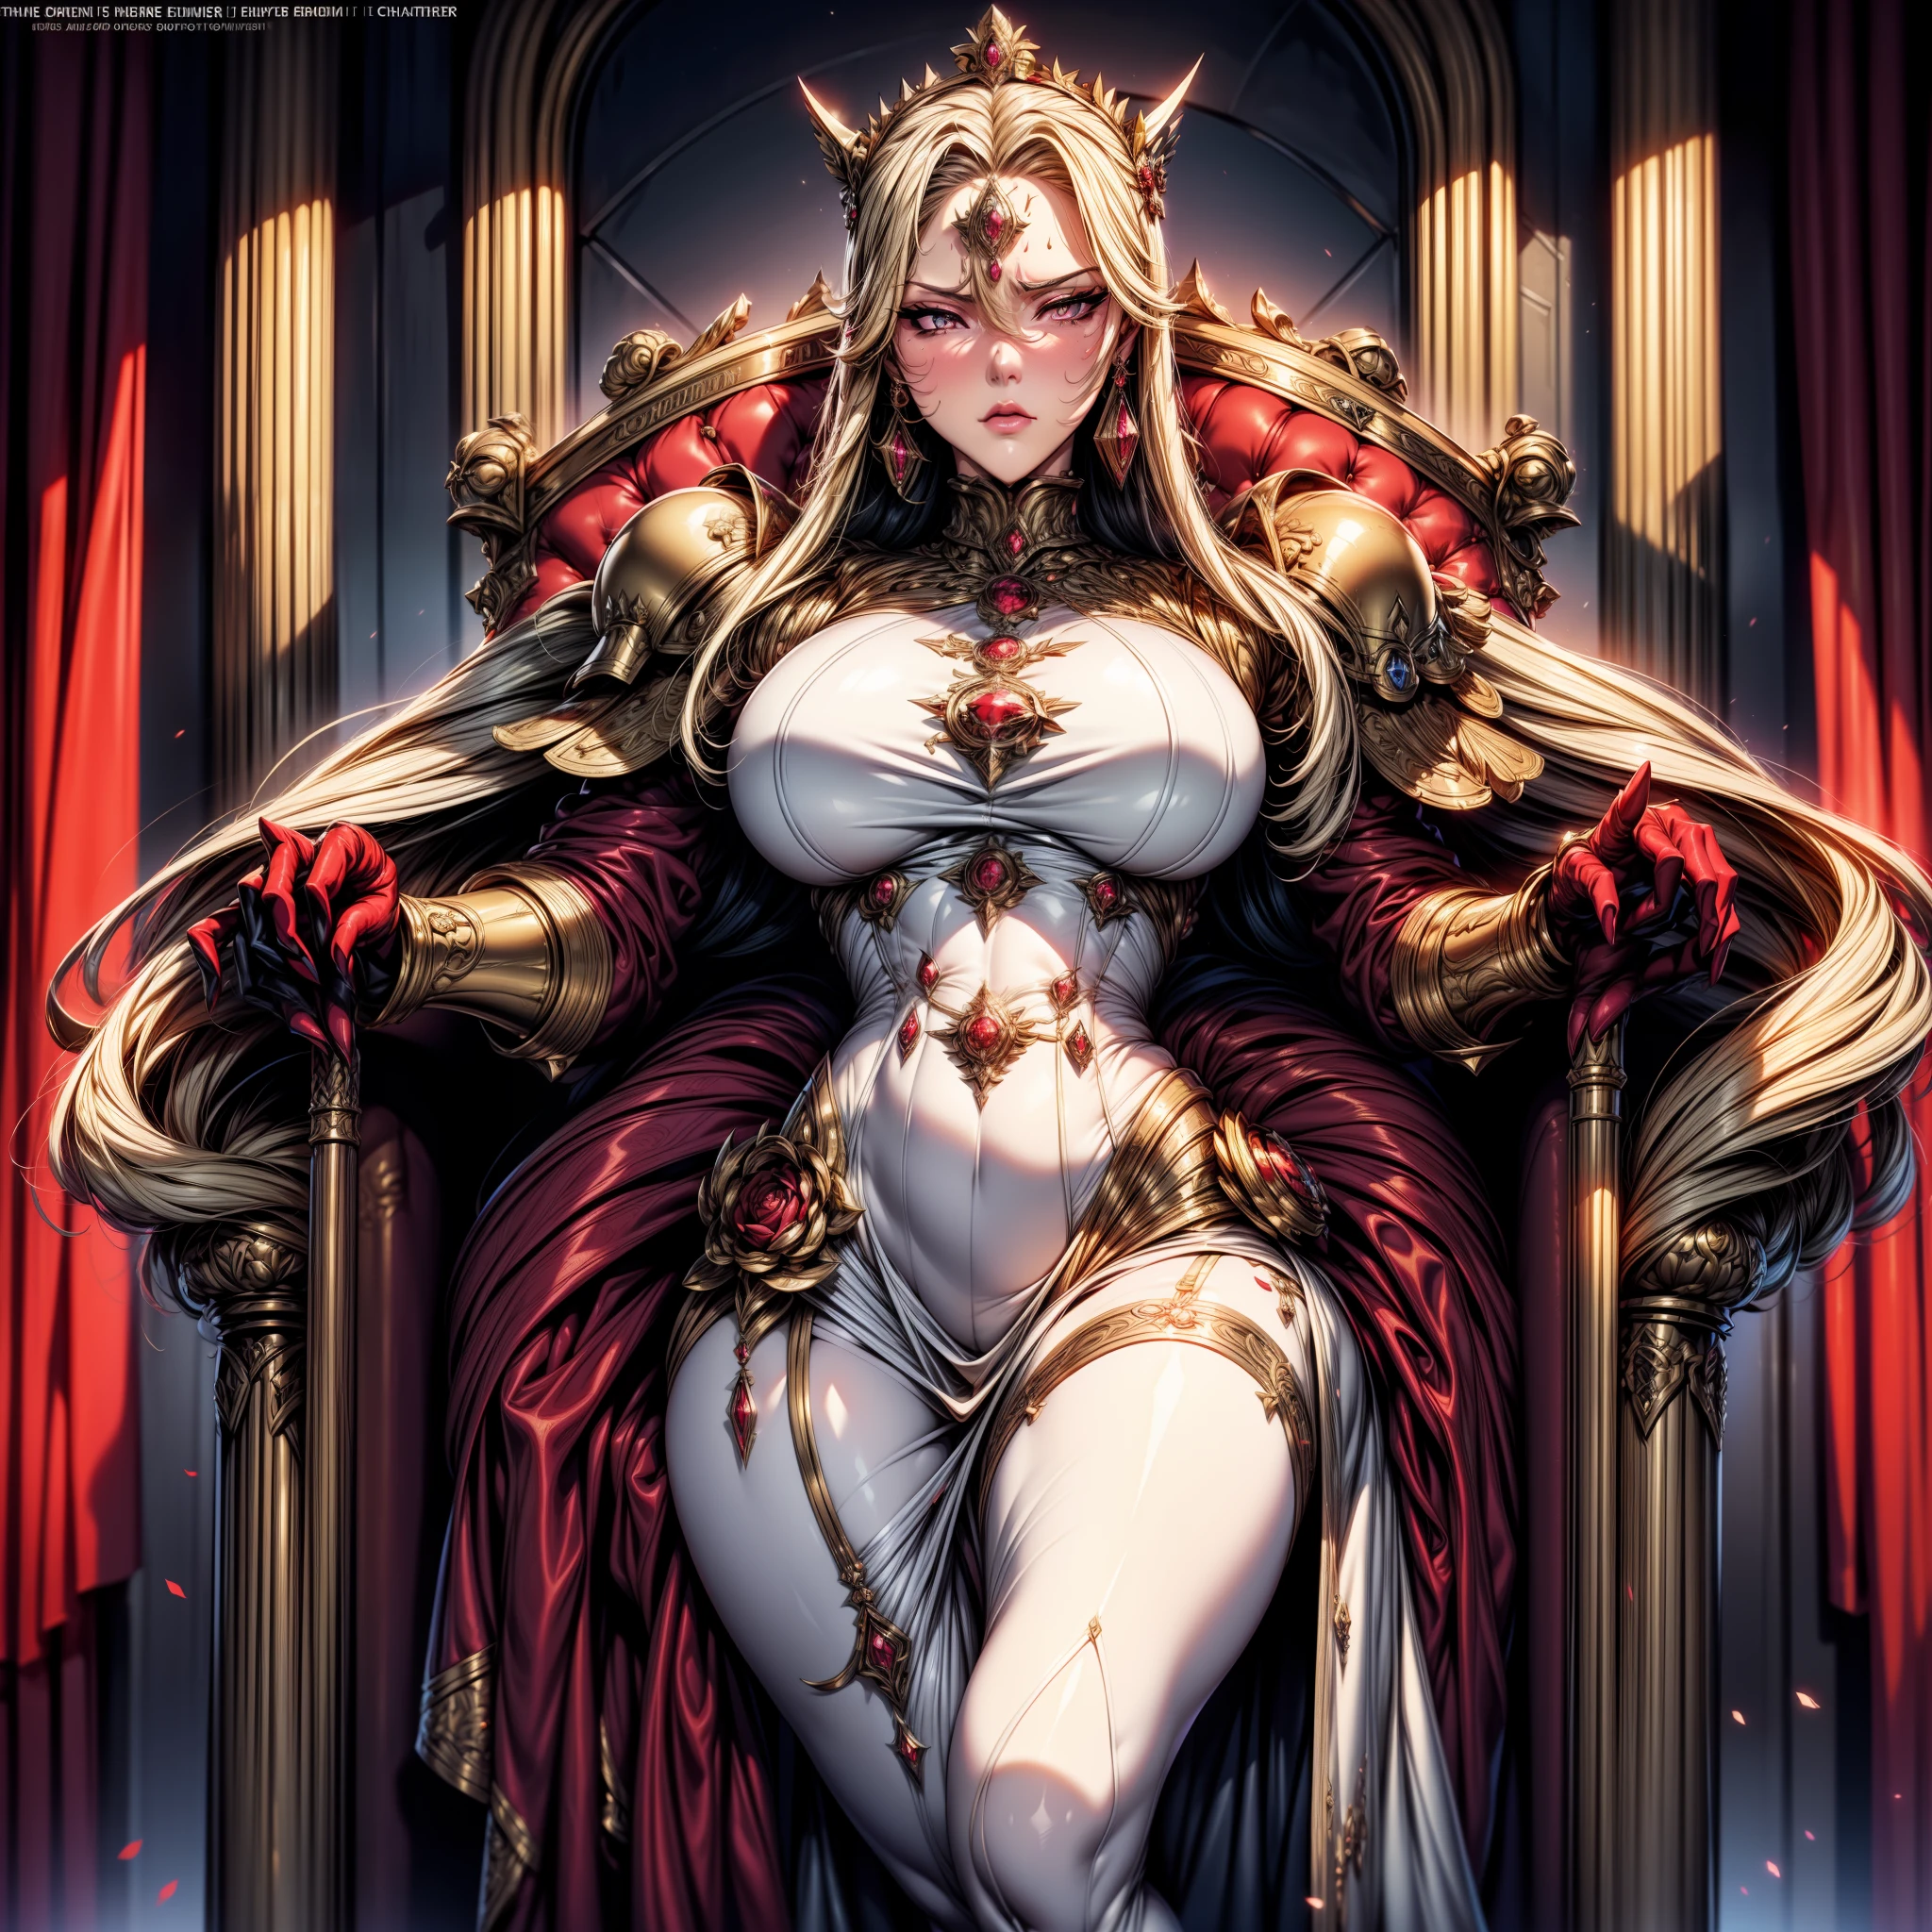 Постер фильма, показывающий цвета в Warhammer 40K（（（（драматургия））），（（（твердость））），（（（разгневанный）））（Журналы：1.3），（Стиль обложки：1.3）Это《Вархаммер40к》Постер фильма с изображением дочери императора。На экране，Благородная и достойная женщина, одетая в великолепное королевское платье.，корона на голове，Как символ королевской крови в Warhammer 40K.。У нее длинные светлые волосы，Глаза выражают уверенность и доминирование.。Женщина держит скипетр, сияющий светом ангела.，Символизирует ее авторитет и власть как дочери императора.。За ней великолепный дворец，Полный роскоши и торжественности。Вся картина излучает ауру святости и величия.，Он показывает правление и королевское поведение дочери императора Warhammer 40K.。